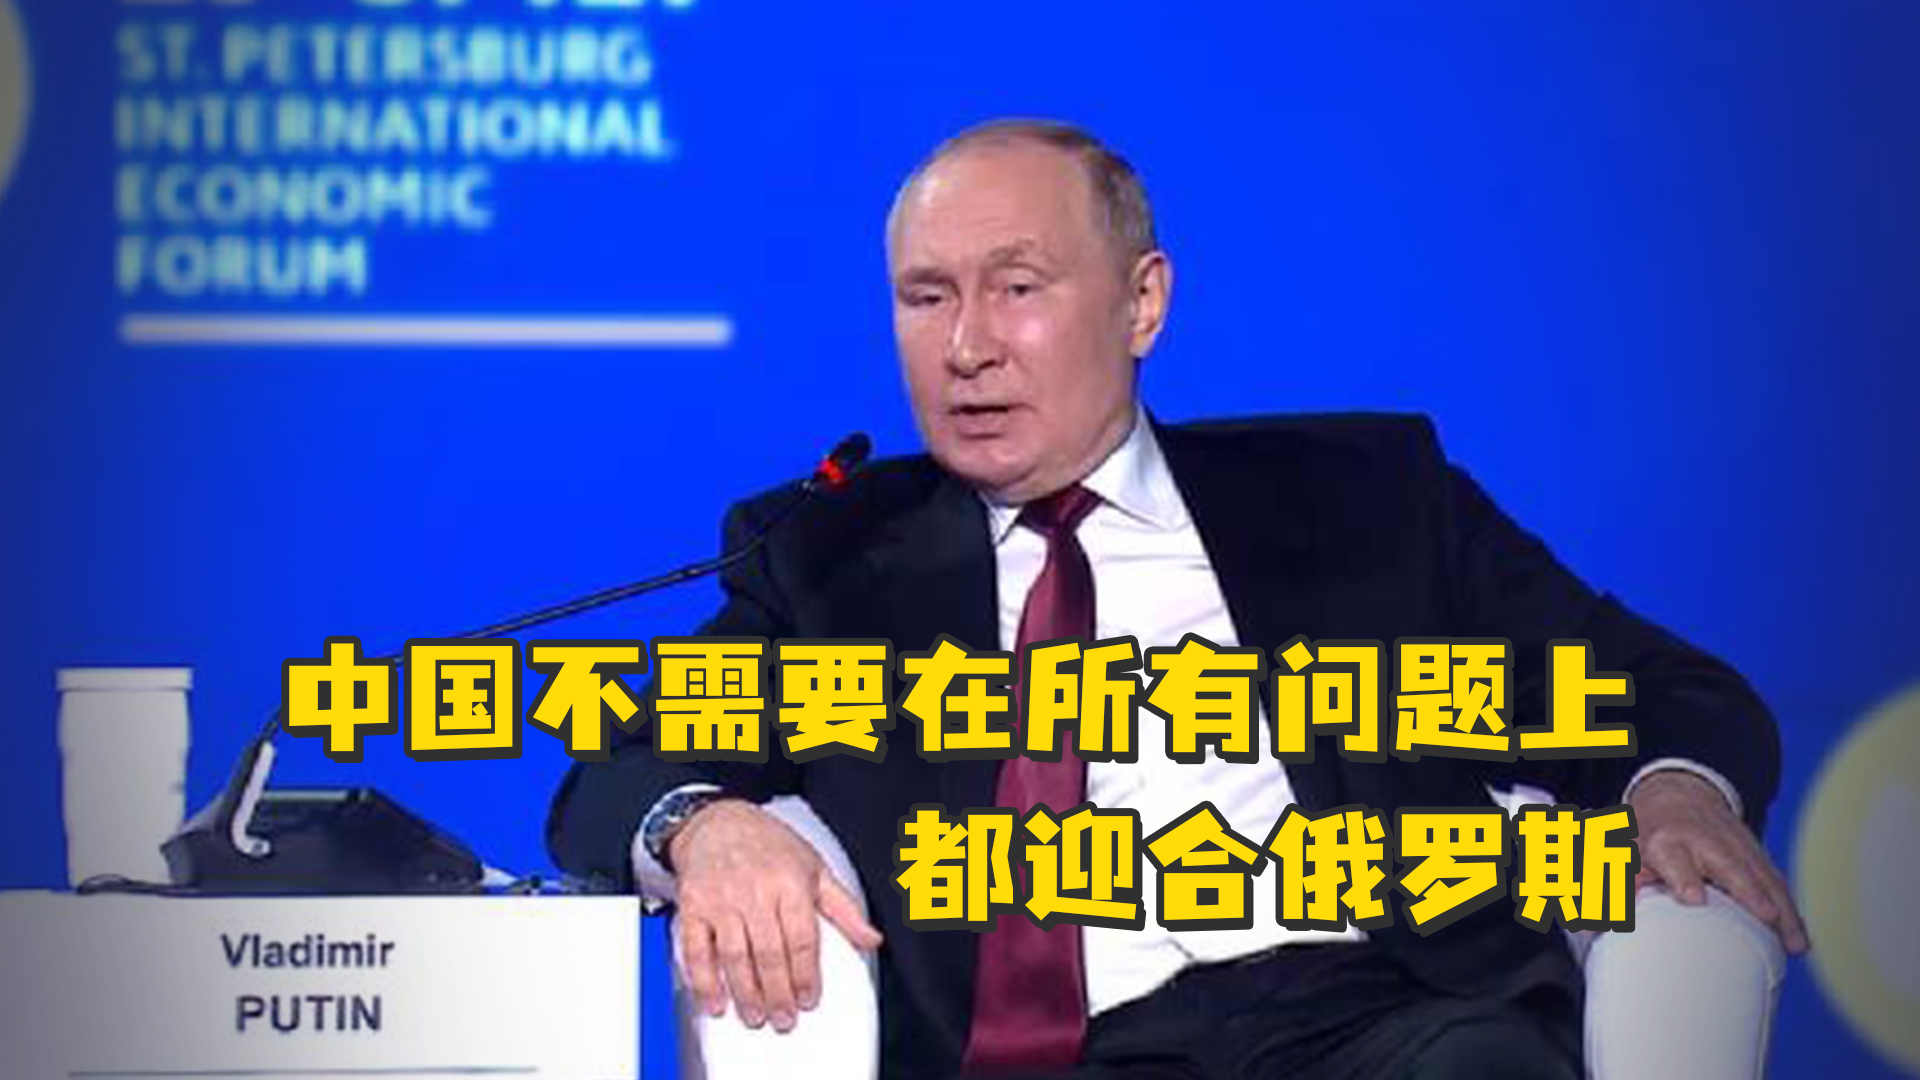 普京称俄经济将提前“复位” 拟投530亿美元鼓励生育(组图)-搜狐新闻